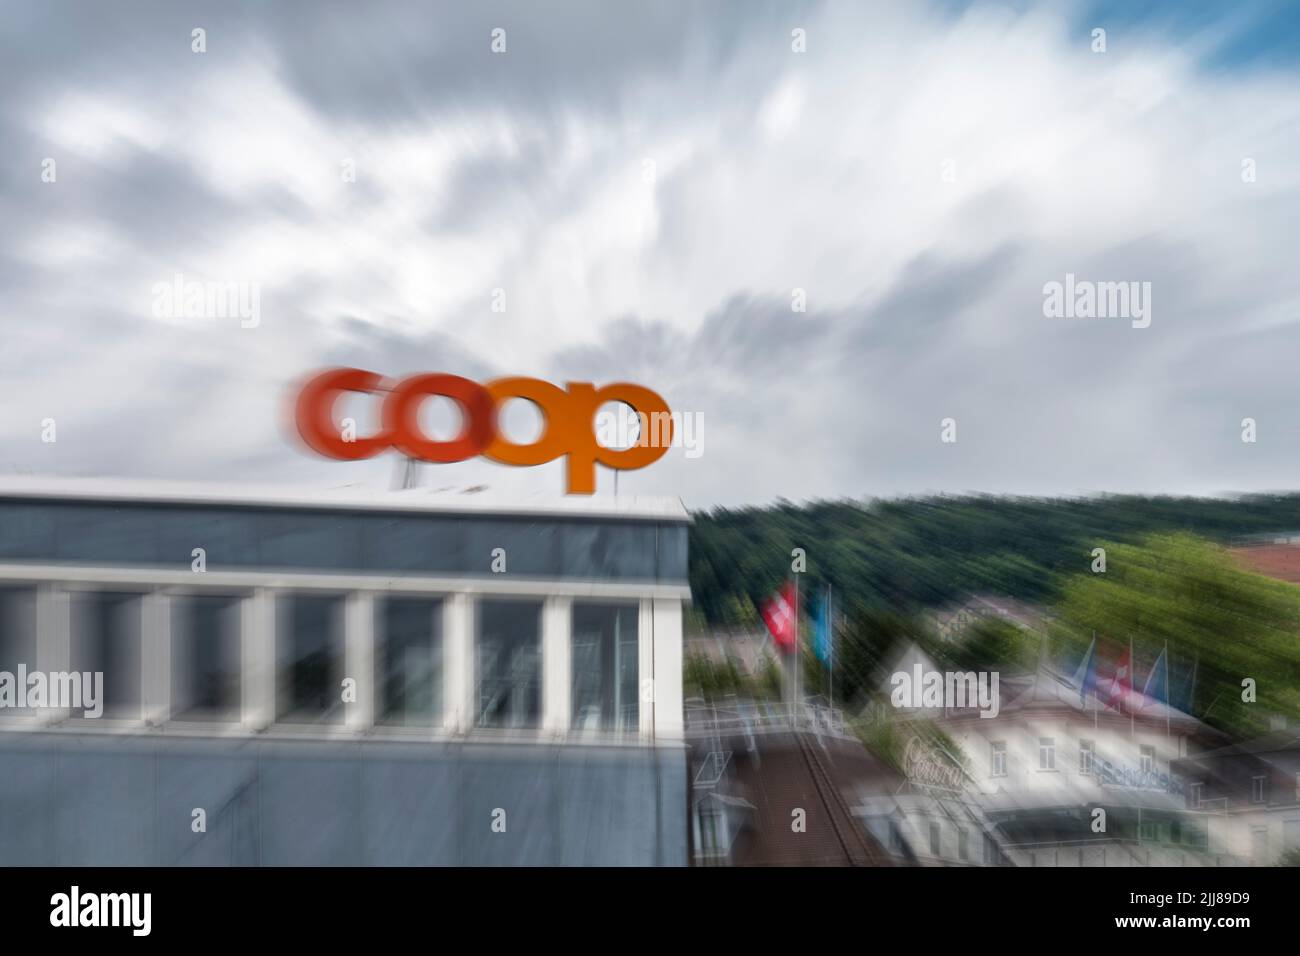 Coop Center in Zürich an der Limmat, Schweiz Stock Photo